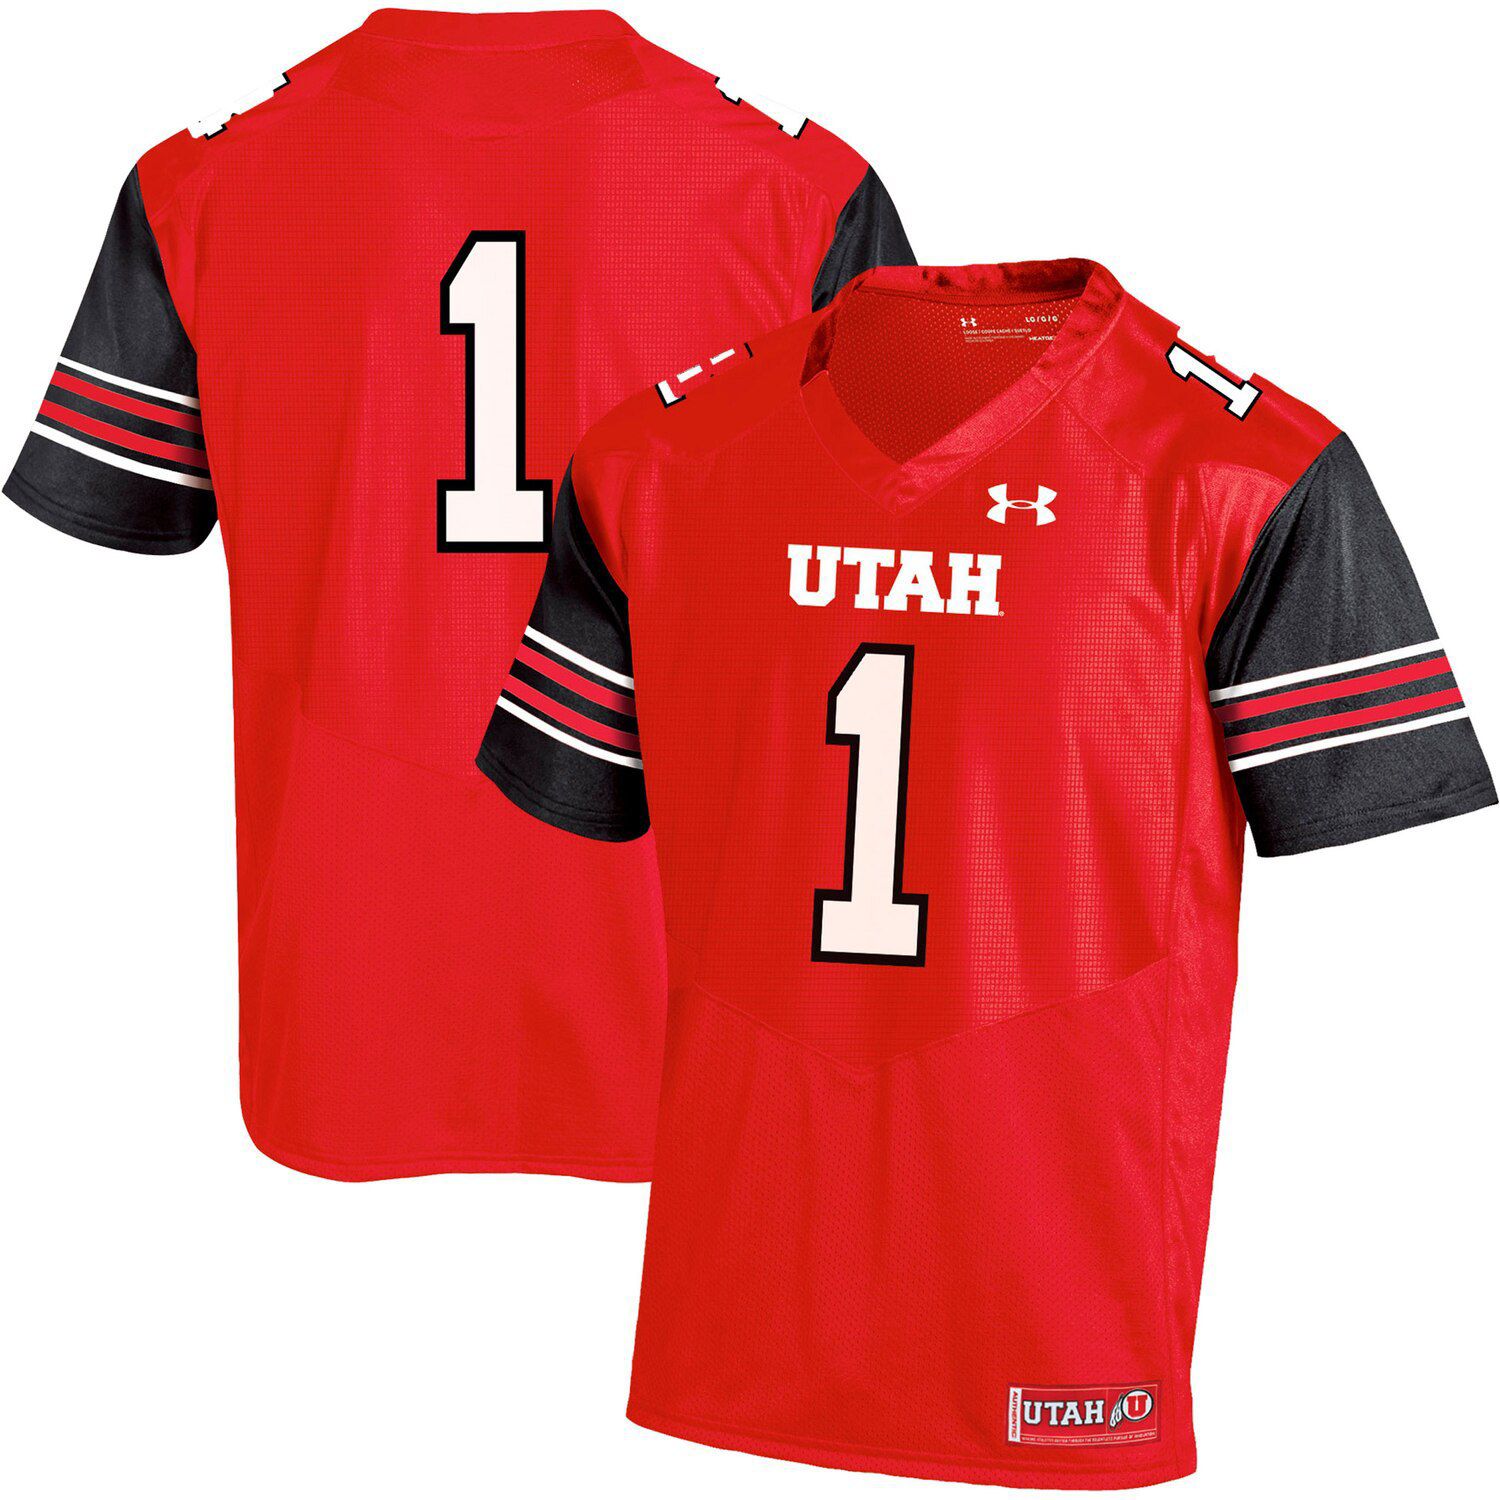 Utah Utes Team Replica Football Jersey